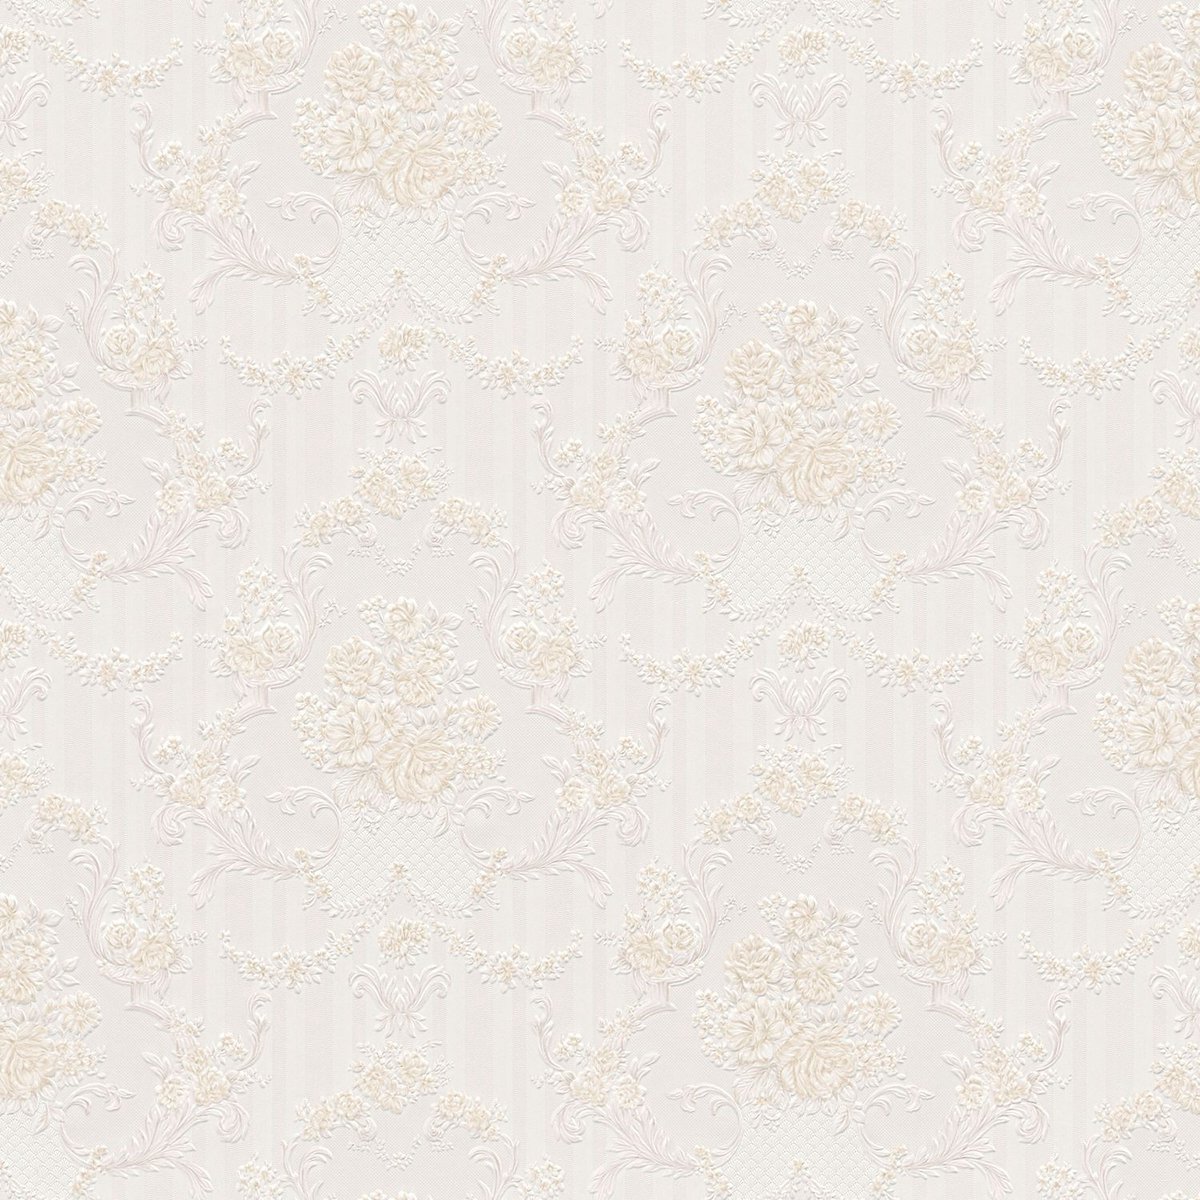 Barok behang Profhome 765772-GU papier behang licht gestructureerd in barok stijl mat beige grijs wit 5,33 m2 - Profhome